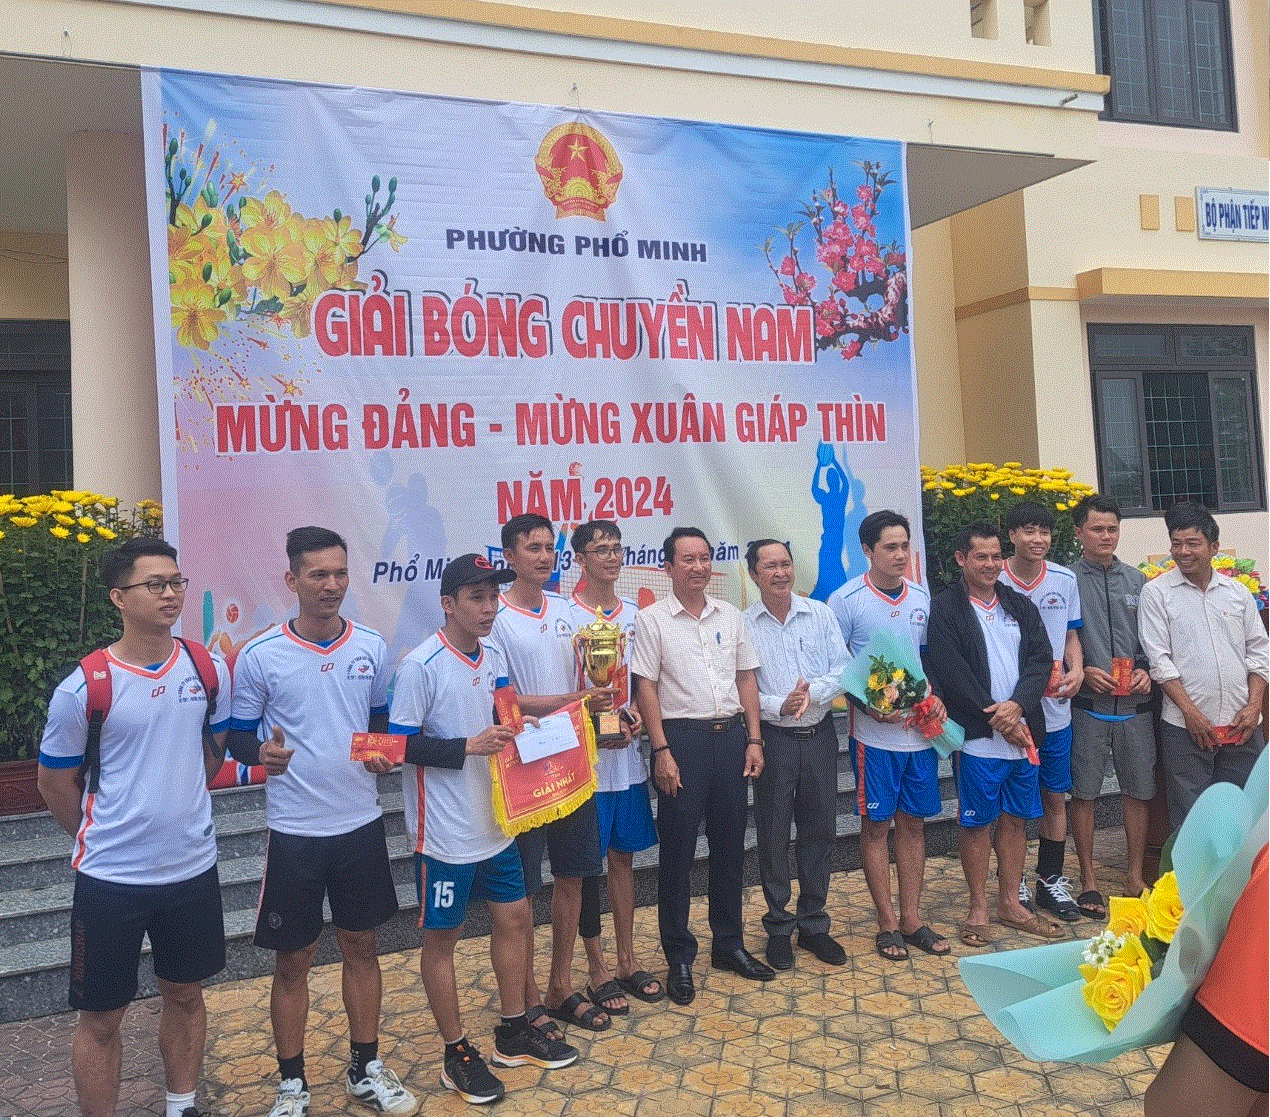 Phường Phổ Minh tổ chức giải bóng chuyền nam lần thứ XII Mừng Đảng – Mừng Xuân Giáp Thìn năm 2024